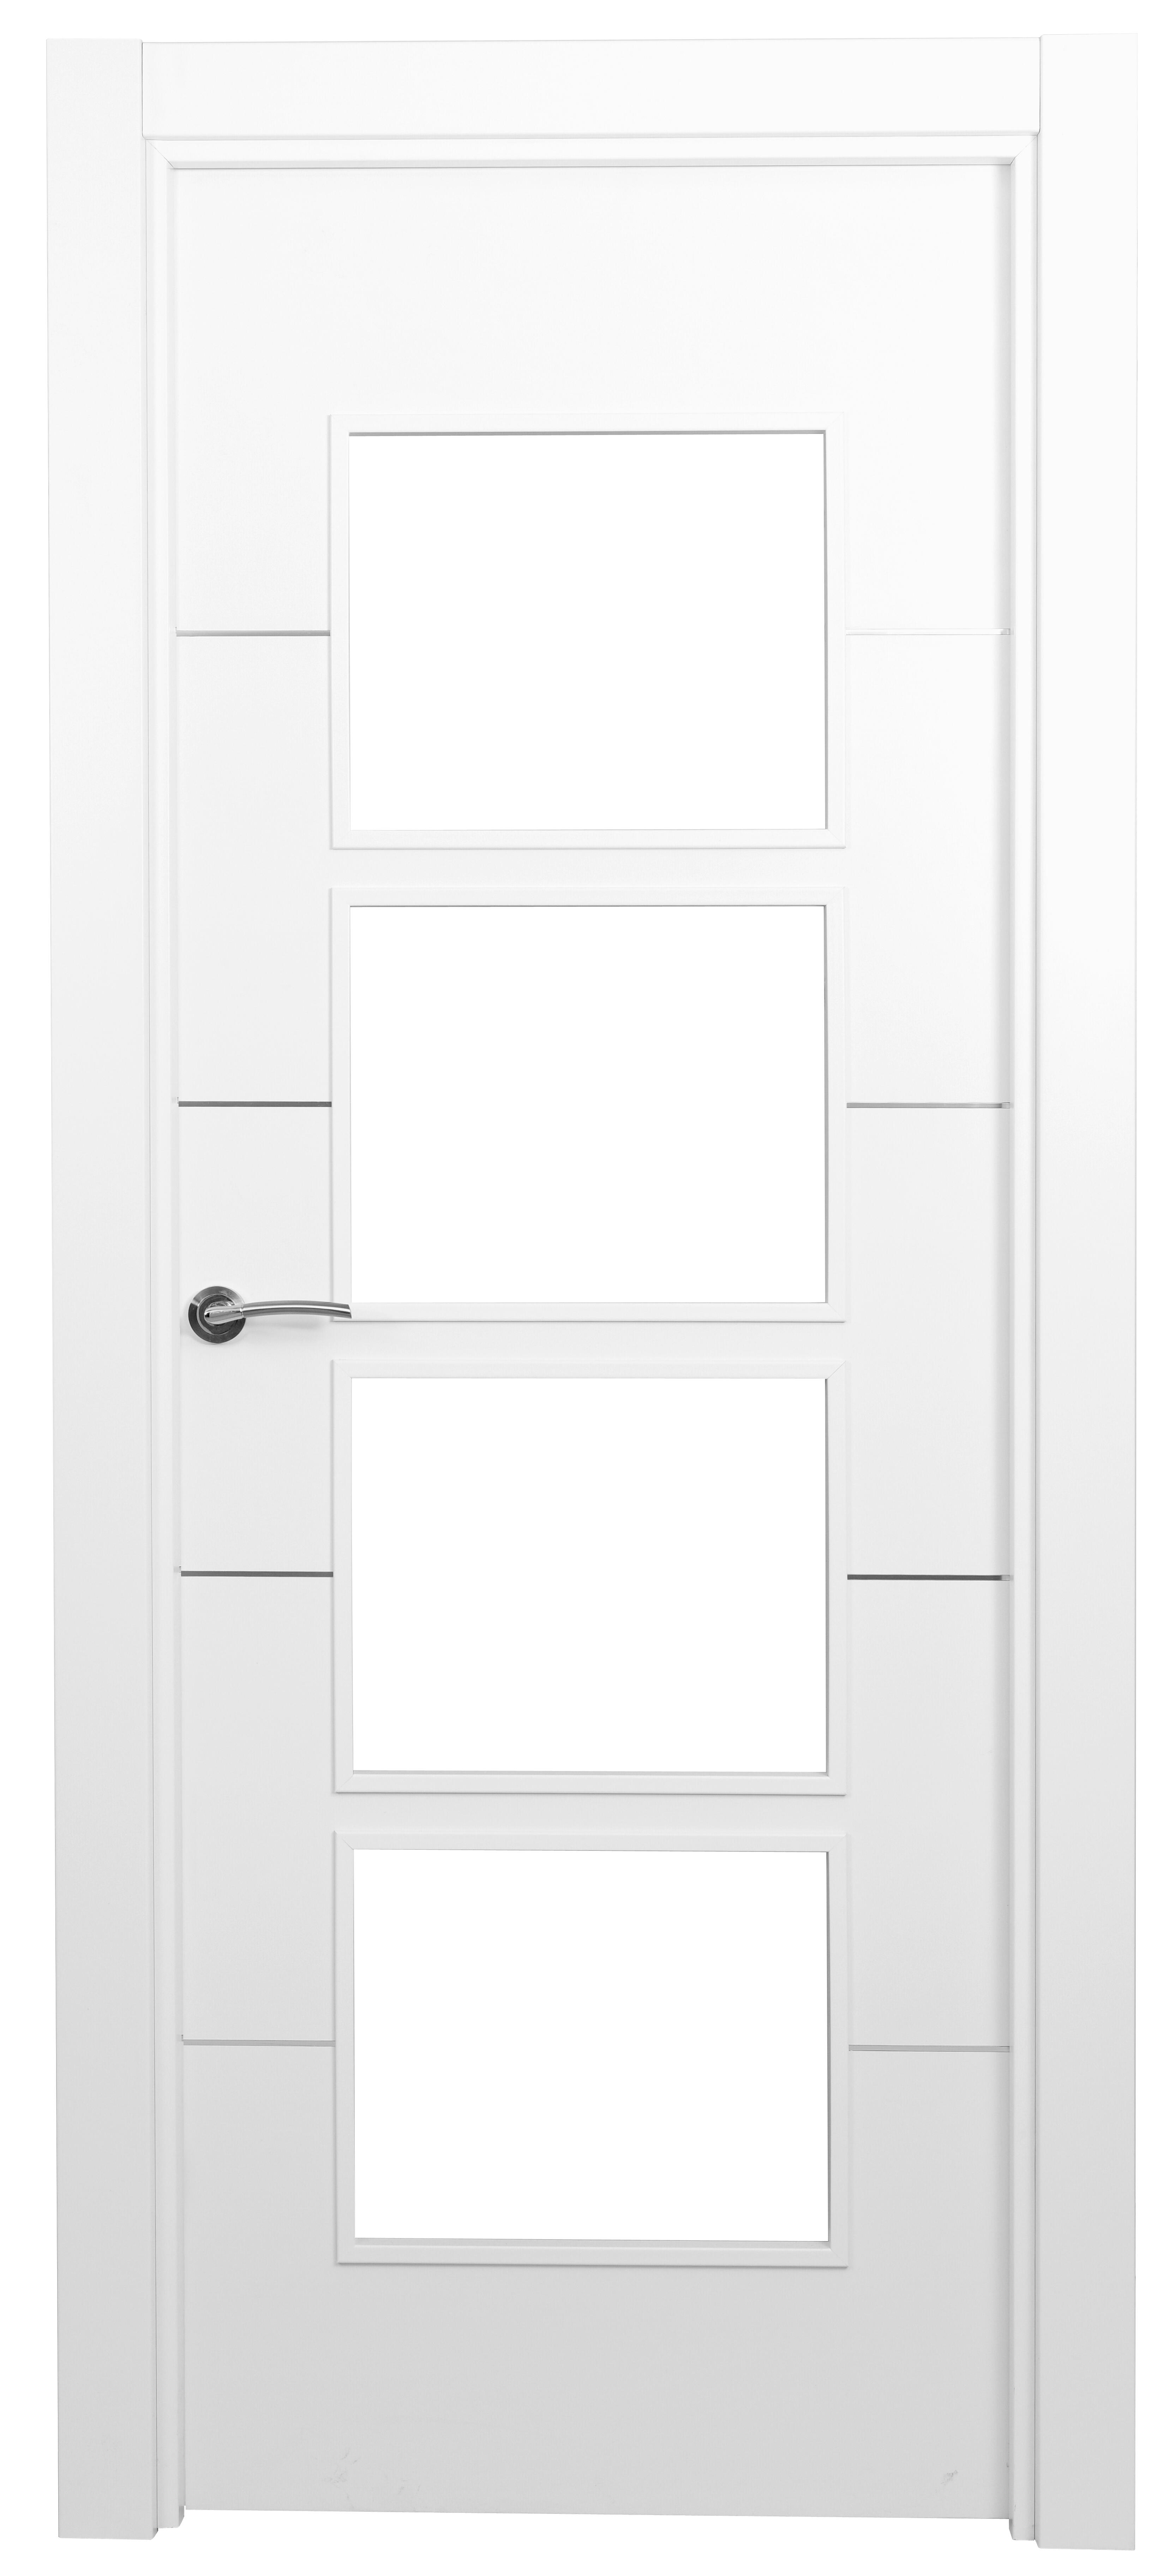 Puerta paris premium blanco apertura derecha con cristal 9x72.5cm